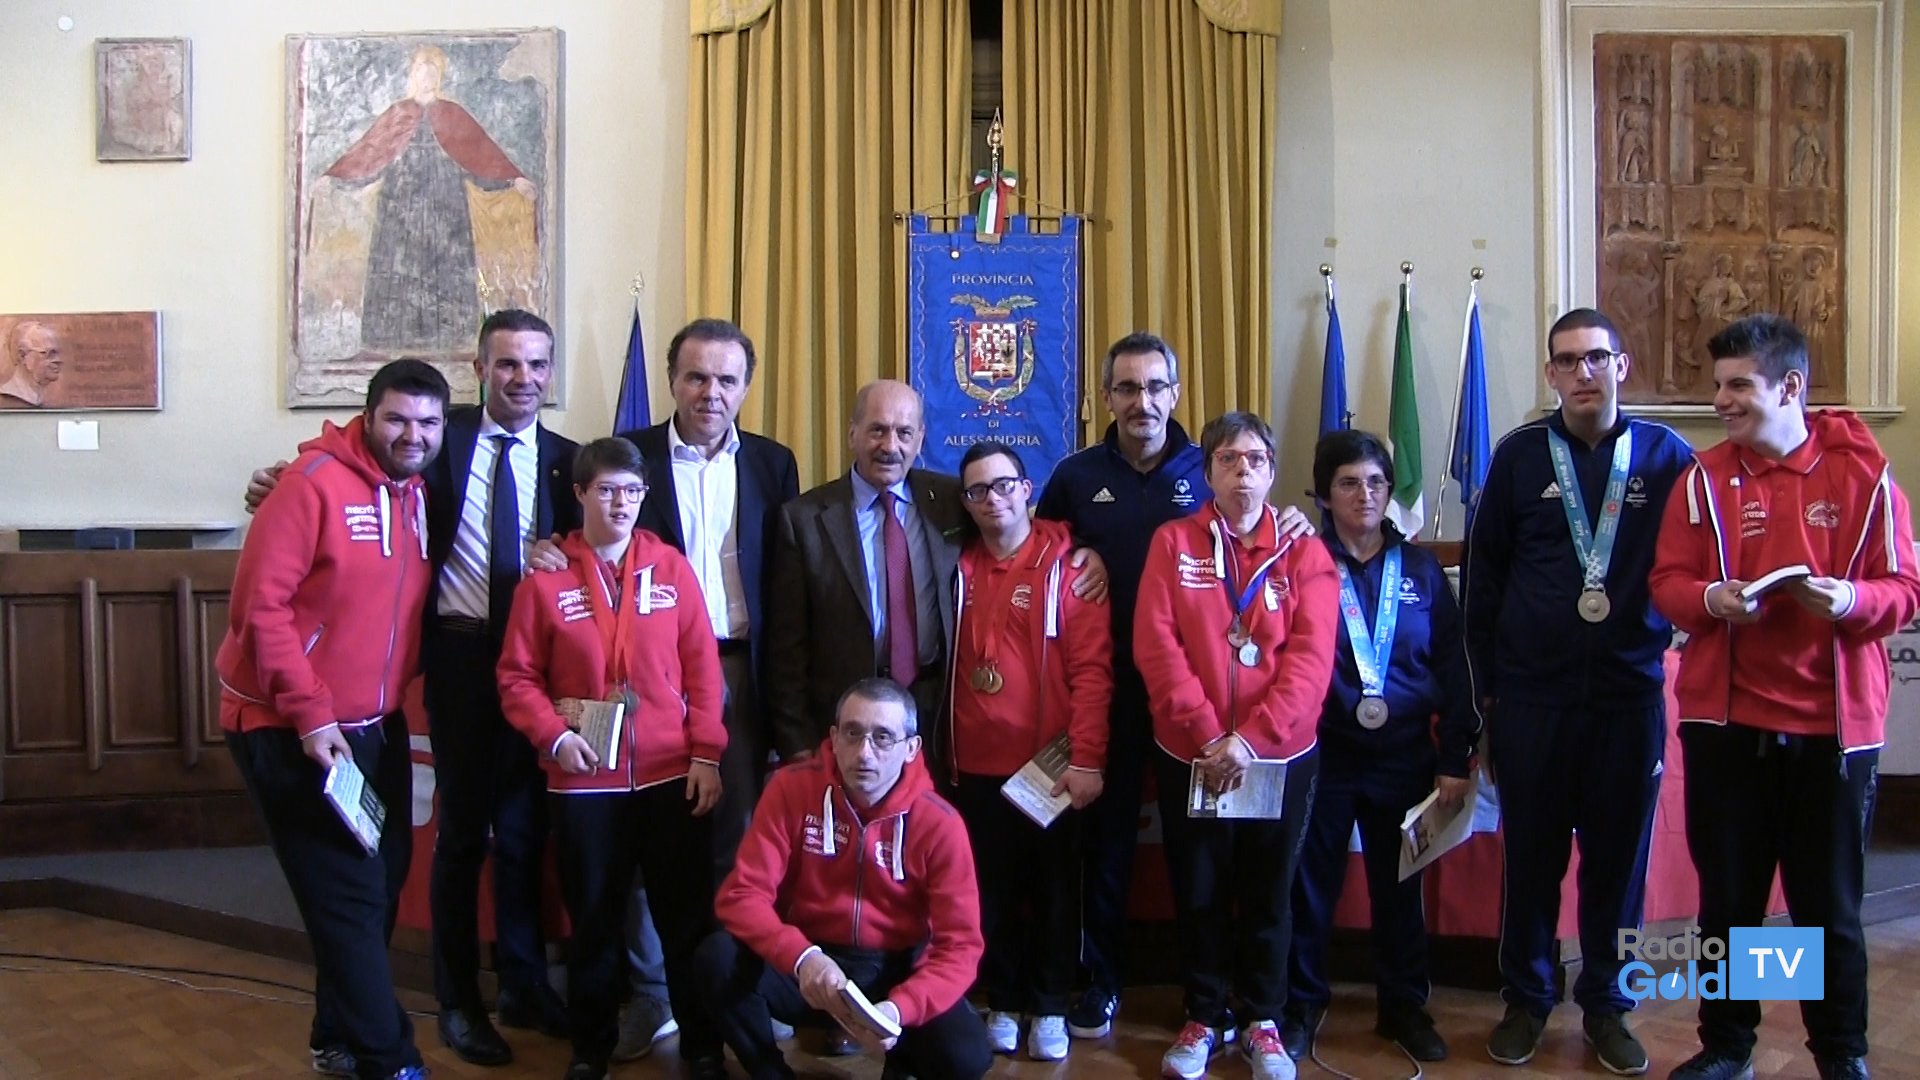 La Provincia premia Scioscio e Bragato, argento Giochi Mondiali Special Olympics